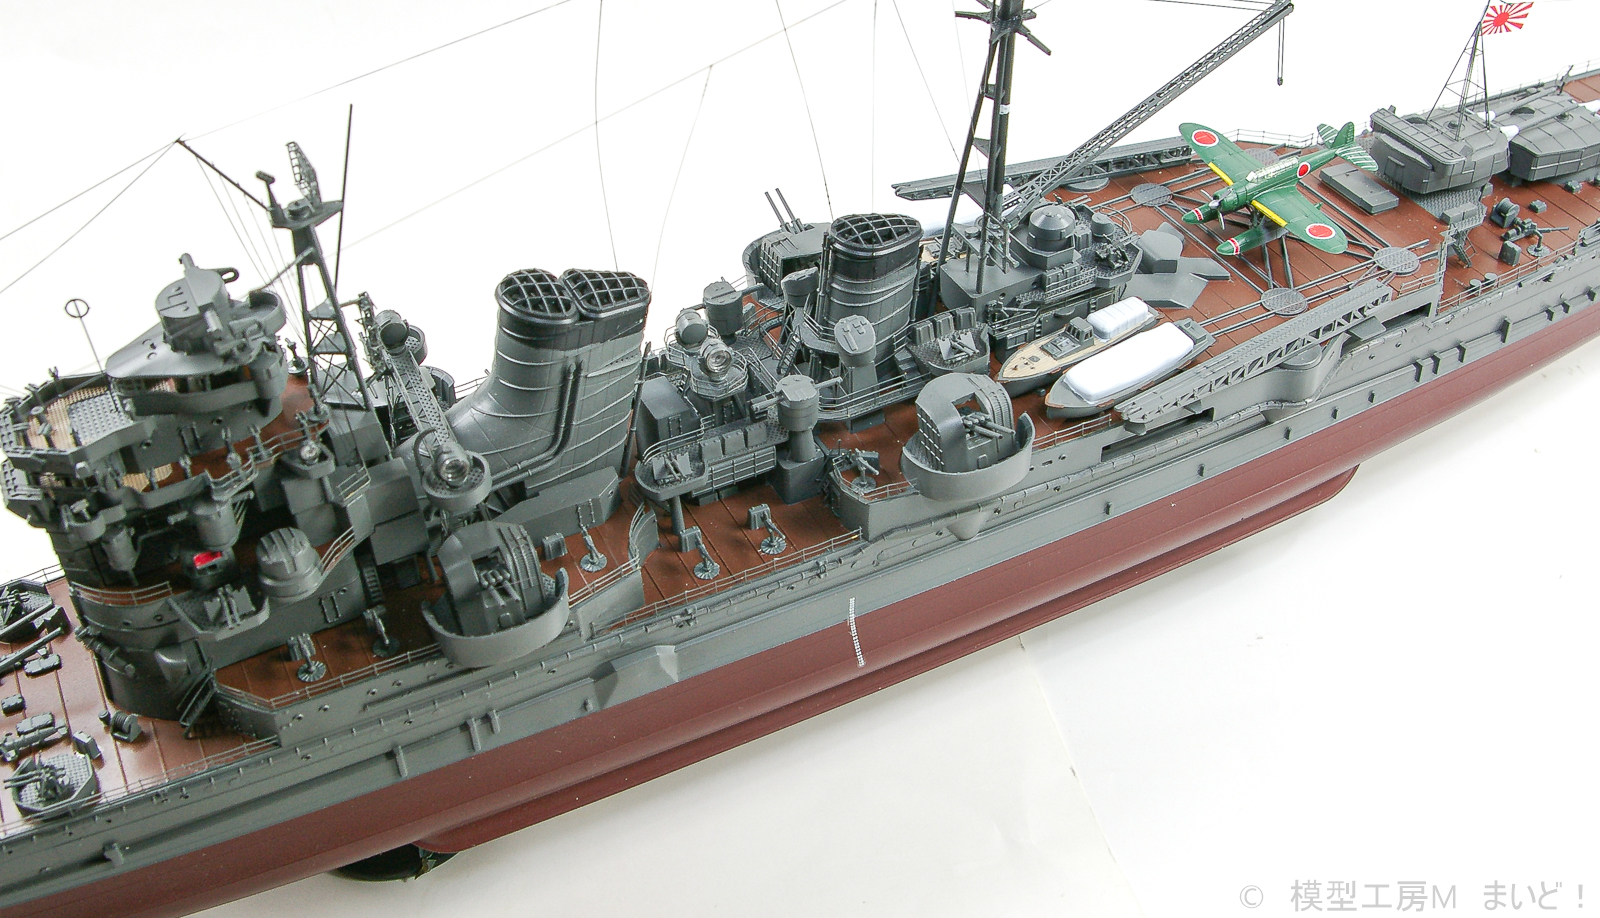 アオシマ 1/350 日本海軍重巡洋艦「足柄」 完成 AOSHIMA ASHIGARA 